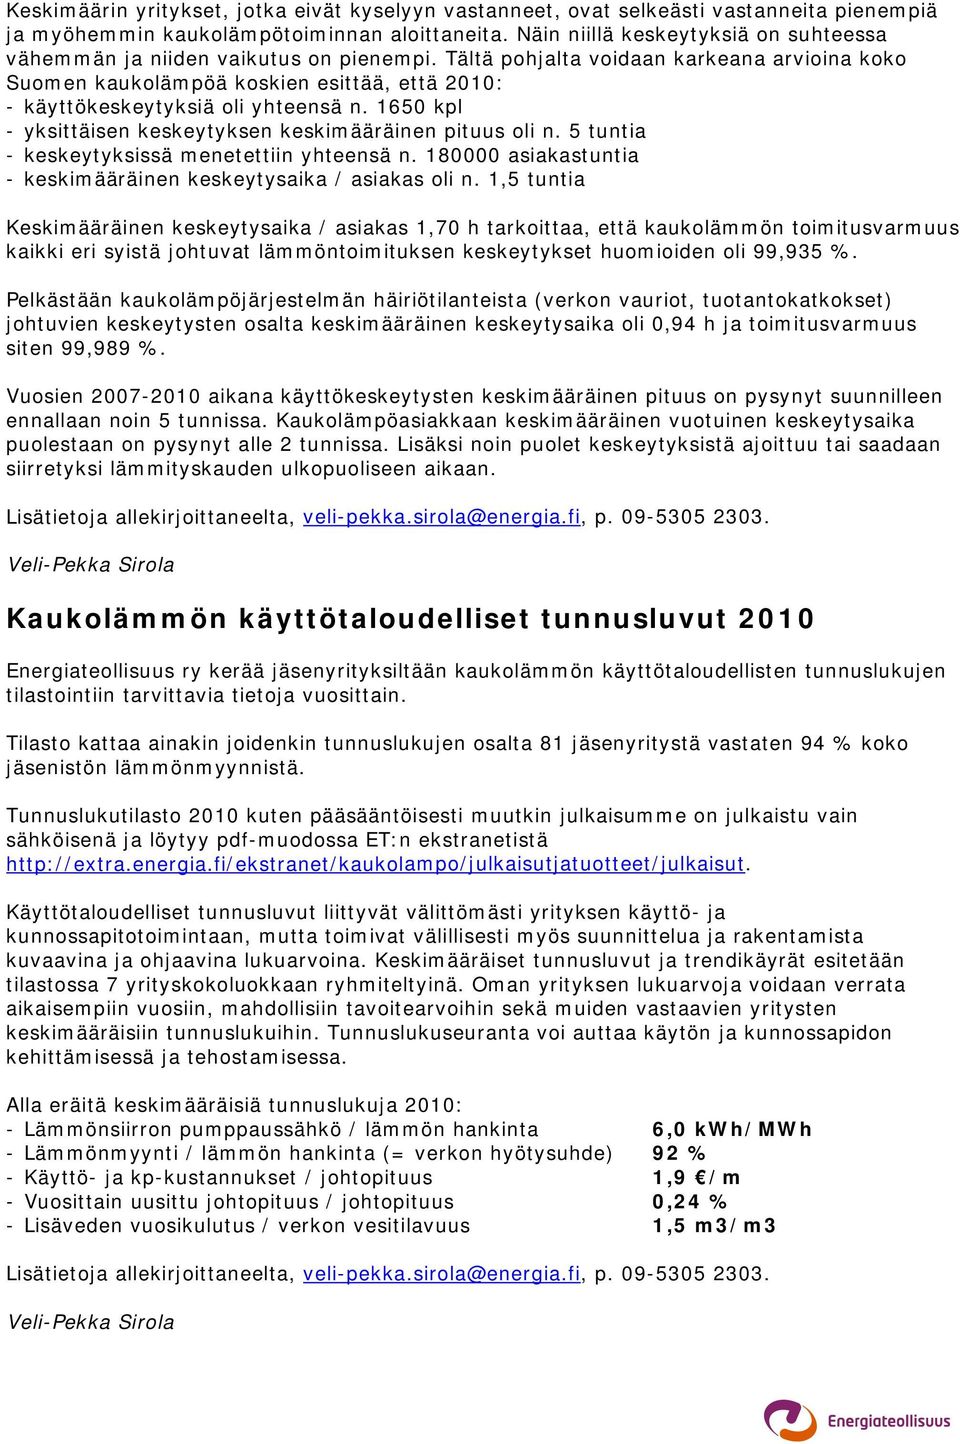 Tältä pohjalta voidaan karkeana arvioina koko Suomen kaukolämpöä koskien esittää, että 2010: - käyttökeskeytyksiä oli yhteensä n. 1650 kpl - yksittäisen keskeytyksen keskimääräinen pituus oli n.